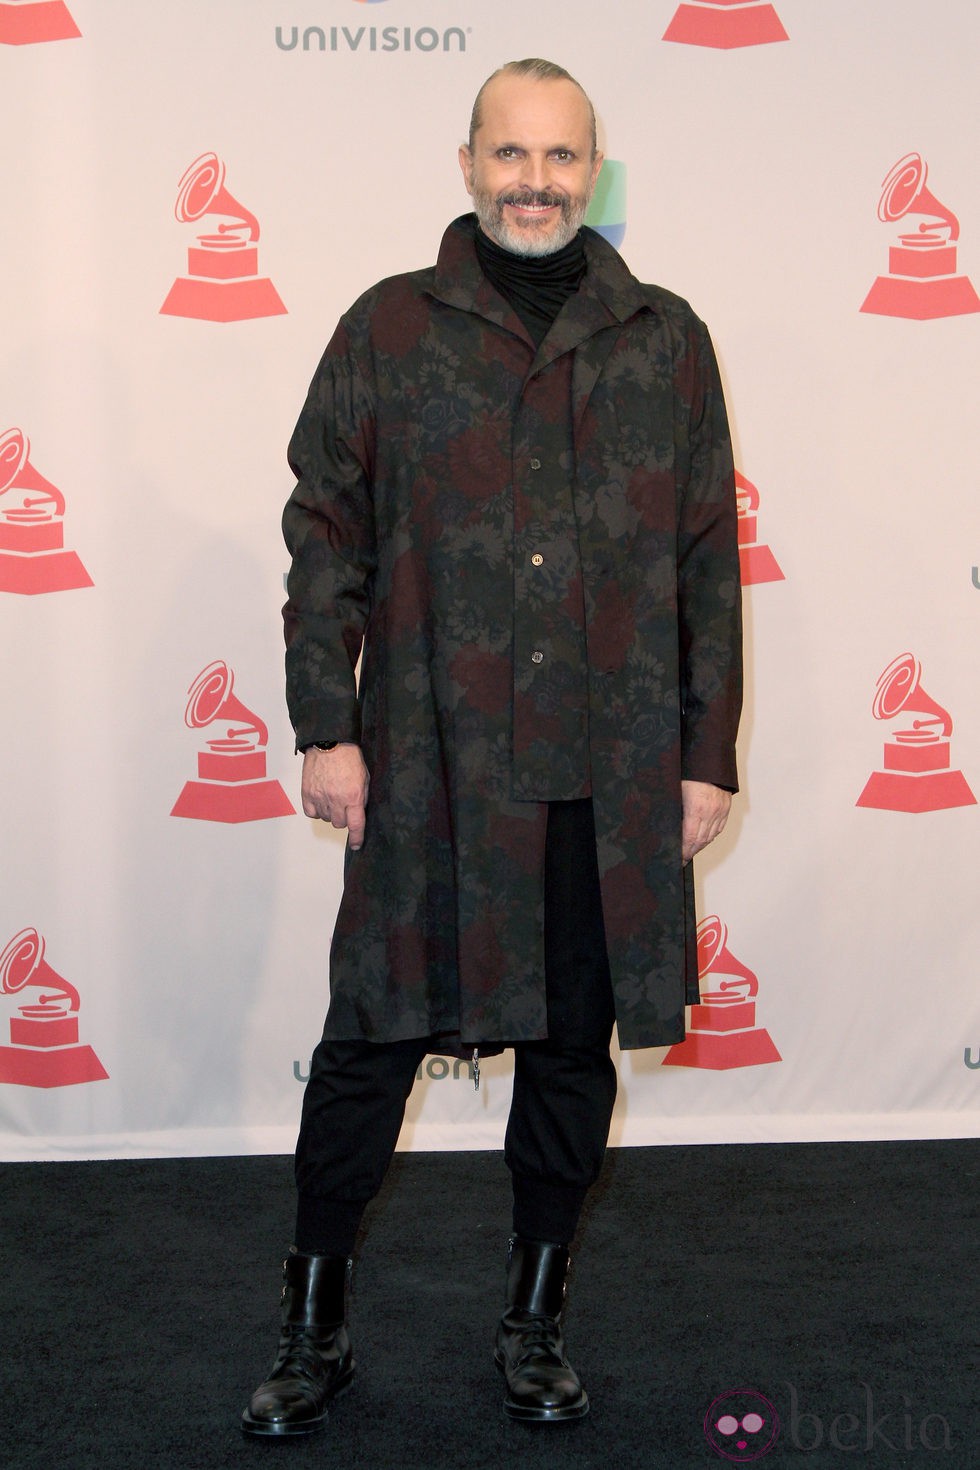 Miguel Bosé en la entrega de los Premios Grammy Latino 2014